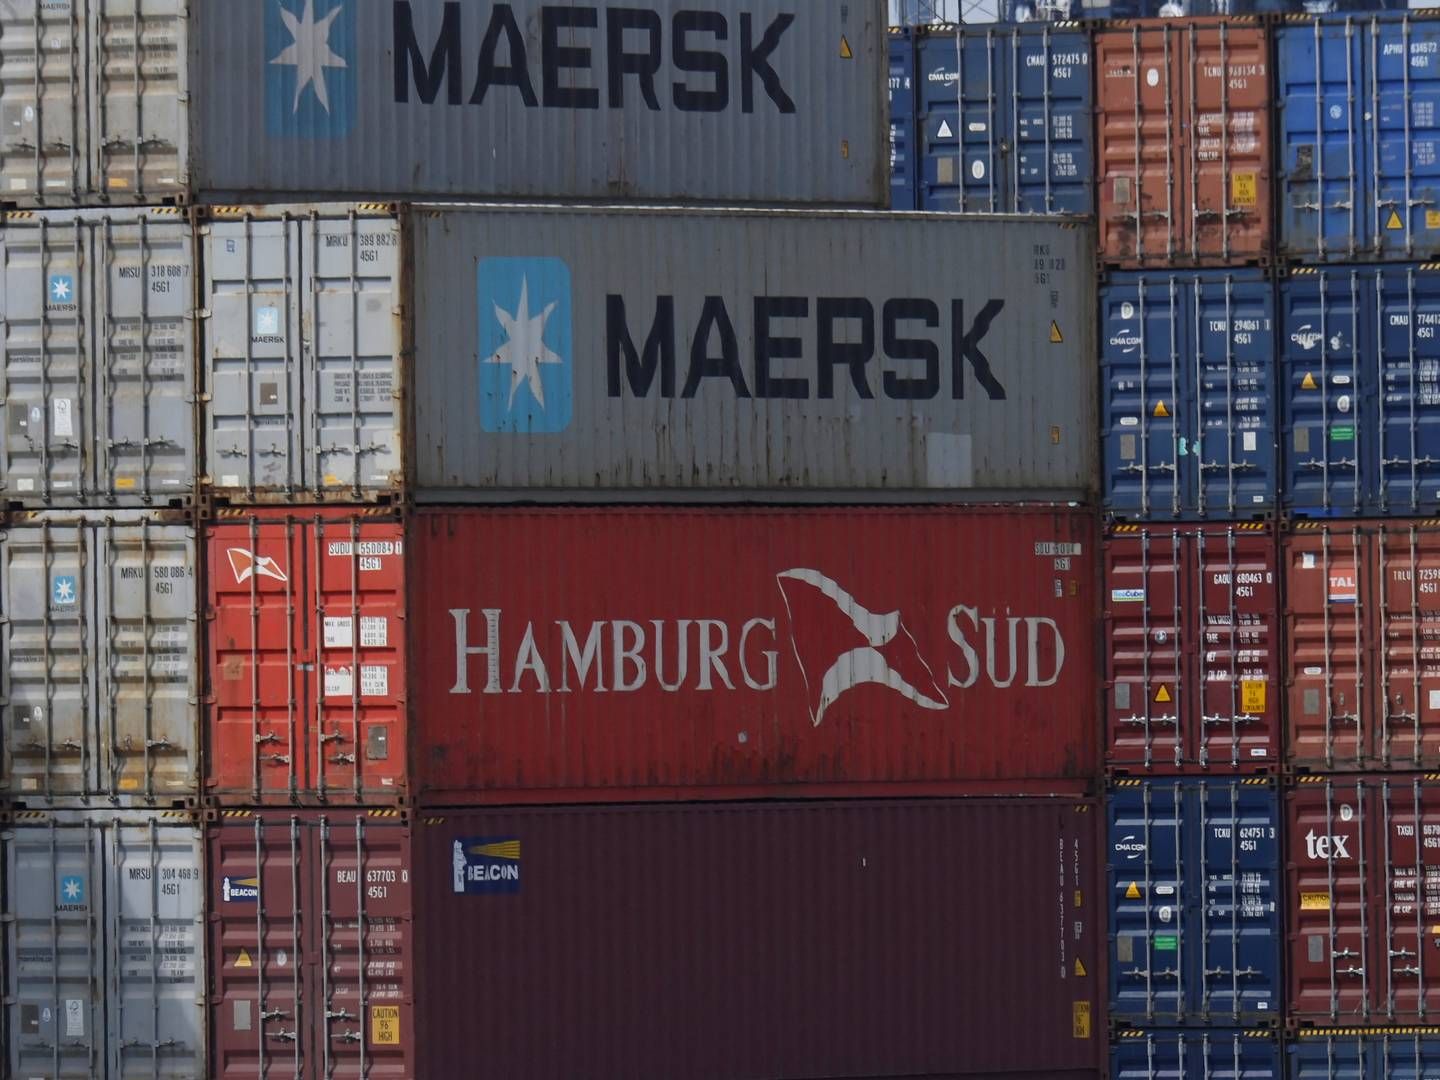 Det er bl.a. et stort skofirma og en møbelproducent, som vil have erstatning efter tab af containere fra Mærsk-skib. | Foto: Toby Melville/Reuters/Ritzau Scanpix